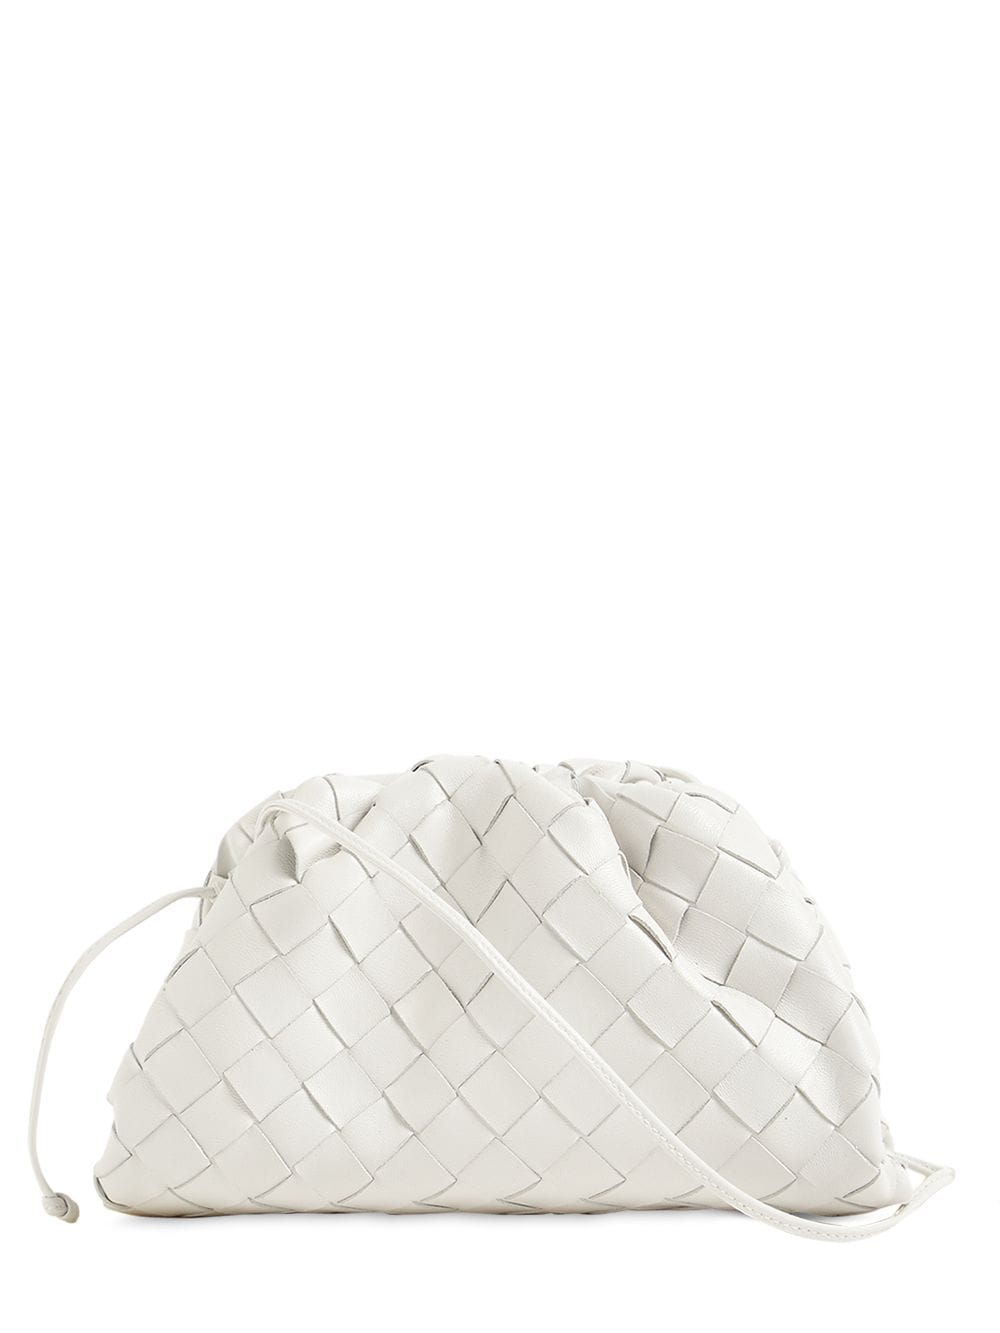 Bottega Veneta The Mini Pouch Intreccio Leather Clutch In White | ModeSens